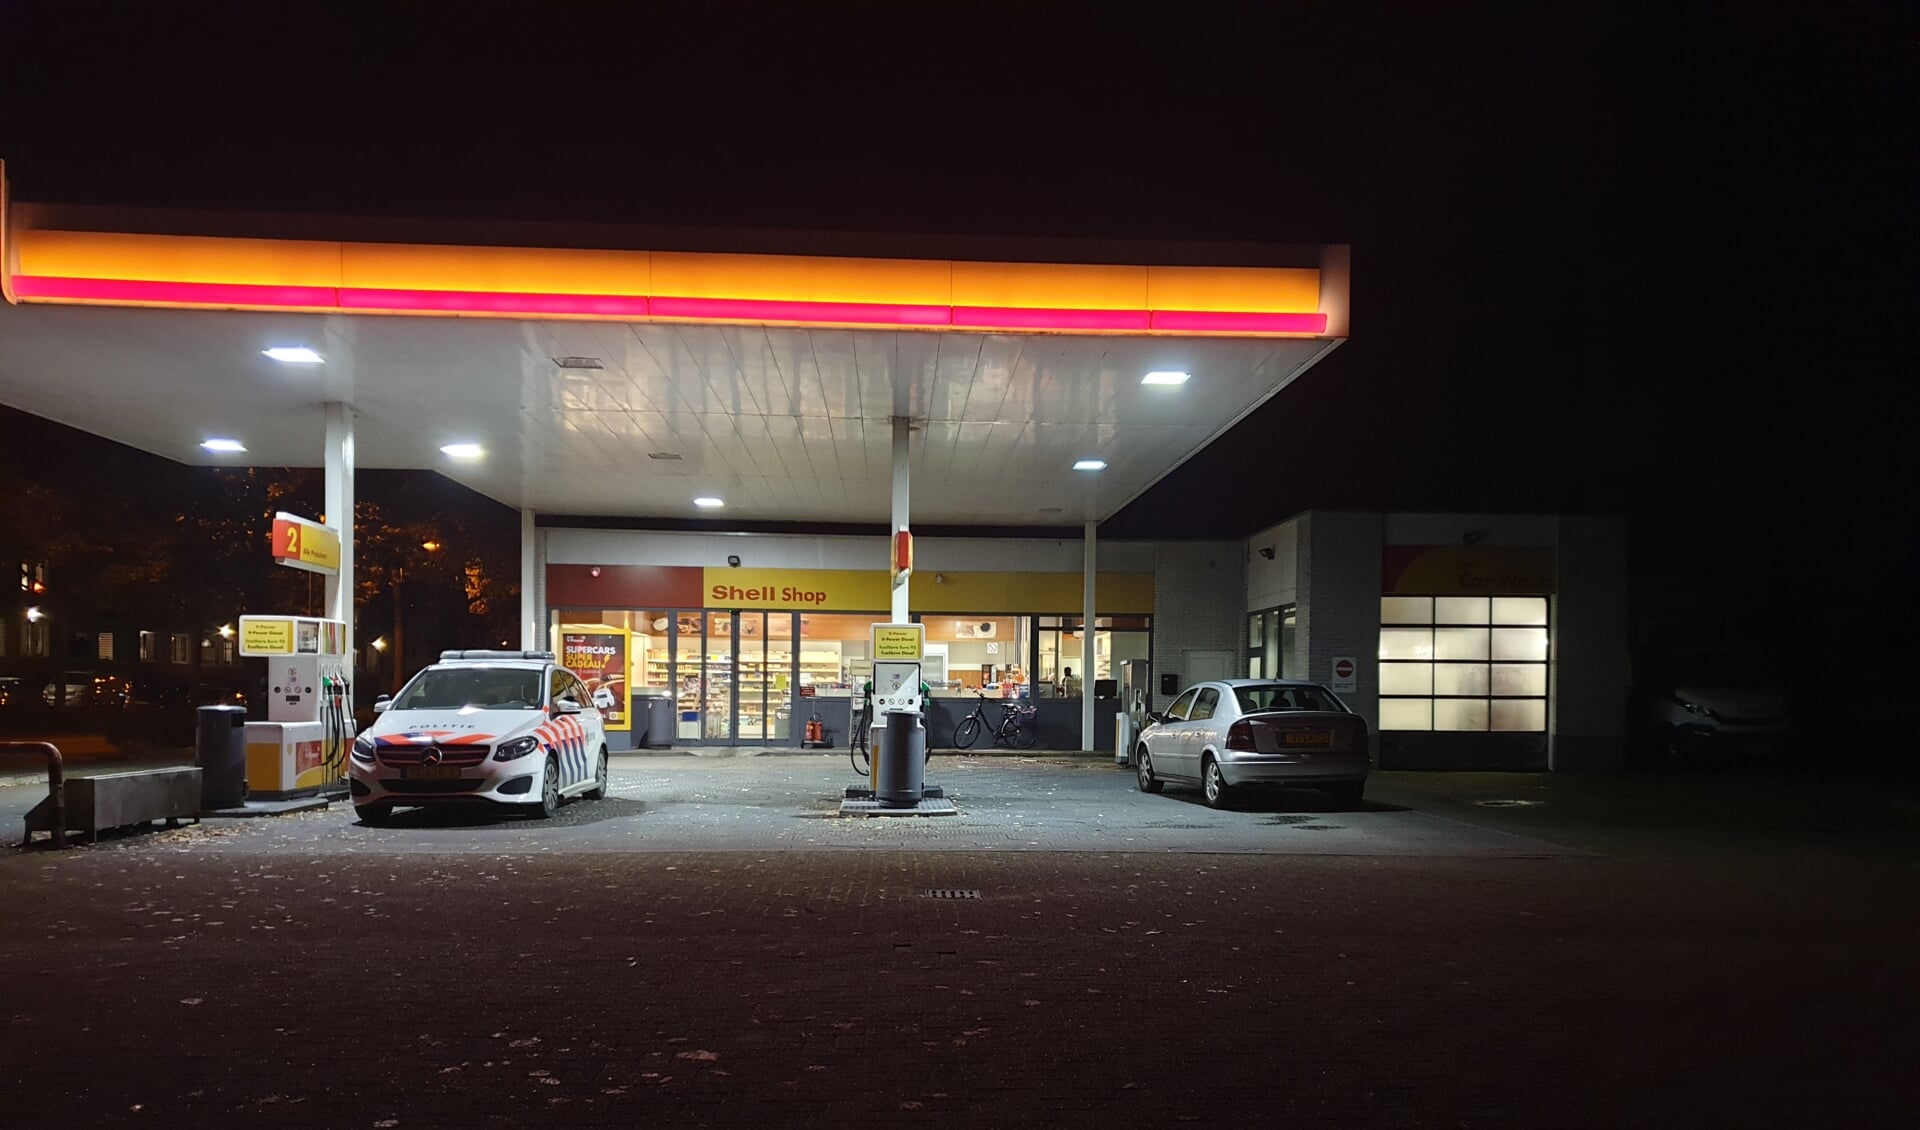 Het tankstation werd aan het begin van de avond overvallen. 